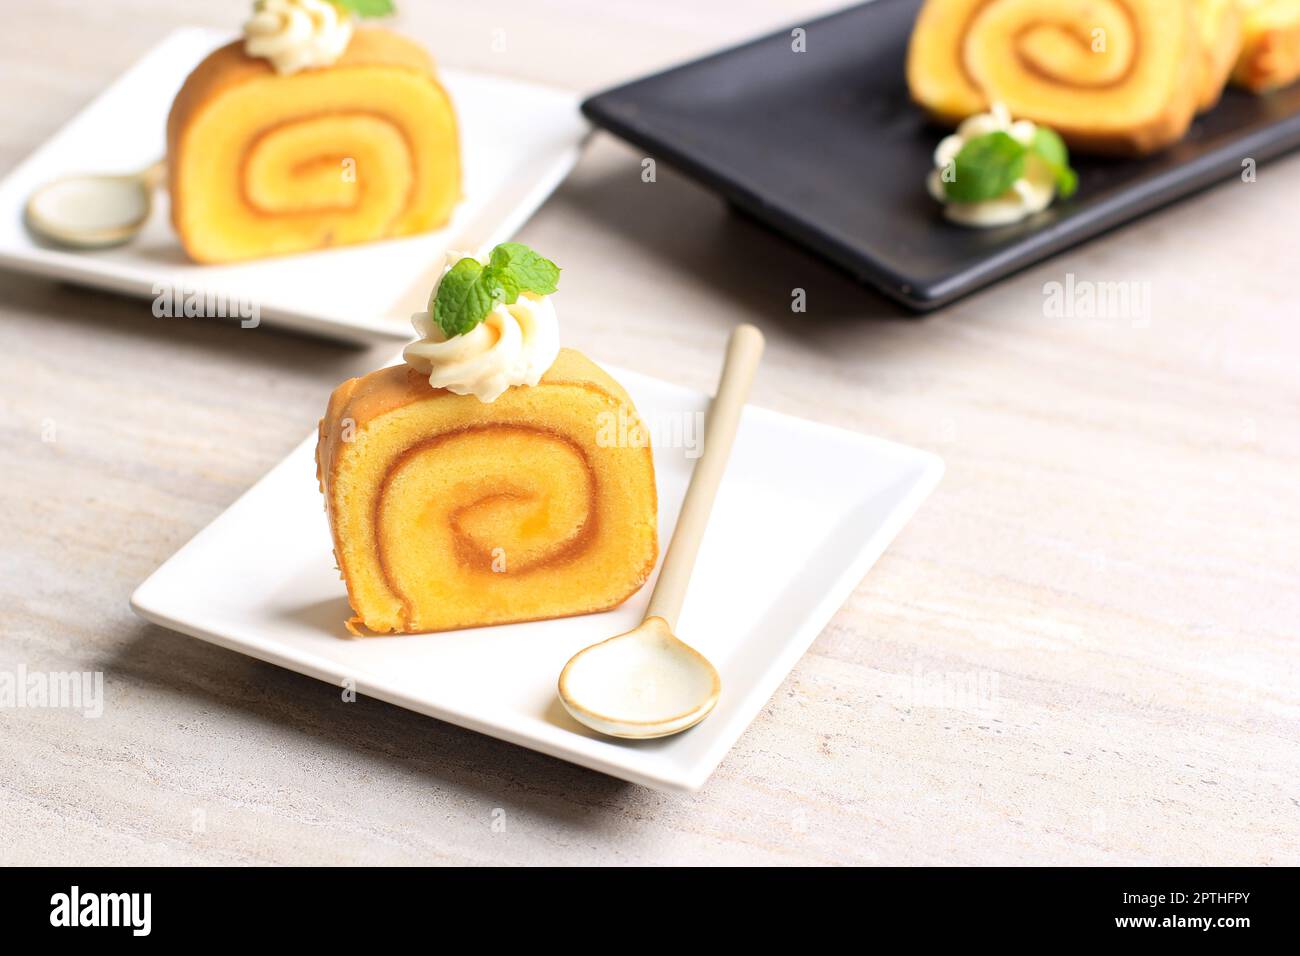 Fetta di torta di ananas Roll Cake o Bolu Gulung Nanas, torta sottile arrotolata con marmellata di ananas con formaggio glassa sulla parte superiore. Foto Stock